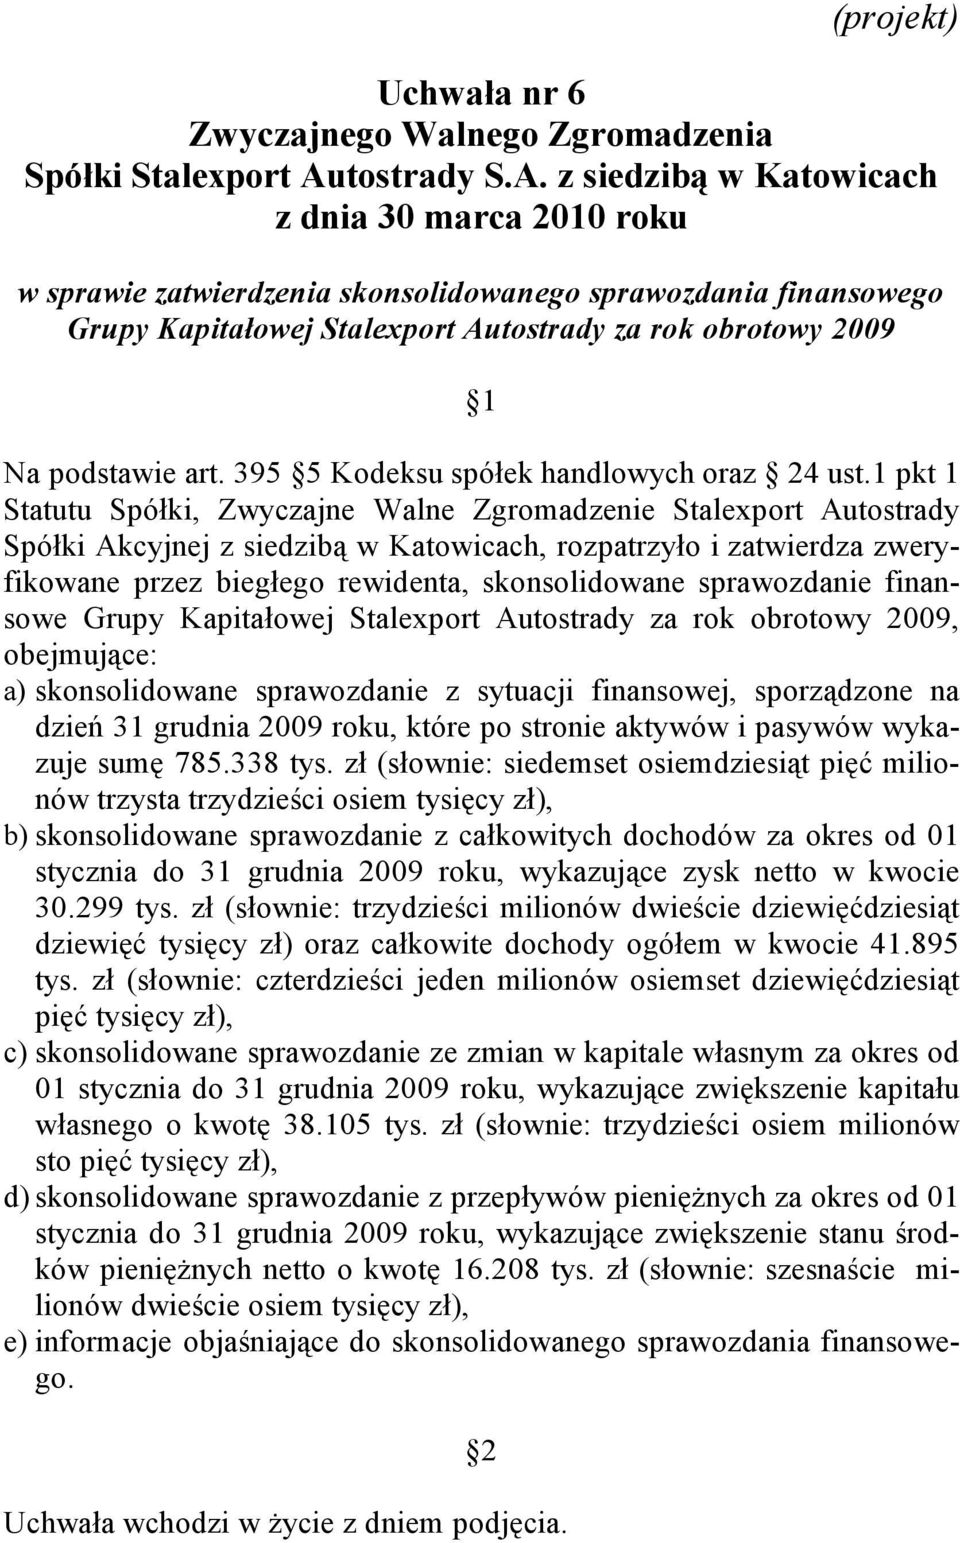 1 pkt 1 Statutu Spółki, Zwyczajne Walne Zgromadzenie Stalexport Autostrady Spółki Akcyjnej z siedzibą w Katowicach, rozpatrzyło i zatwierdza zweryfikowane przez biegłego rewidenta, skonsolidowane